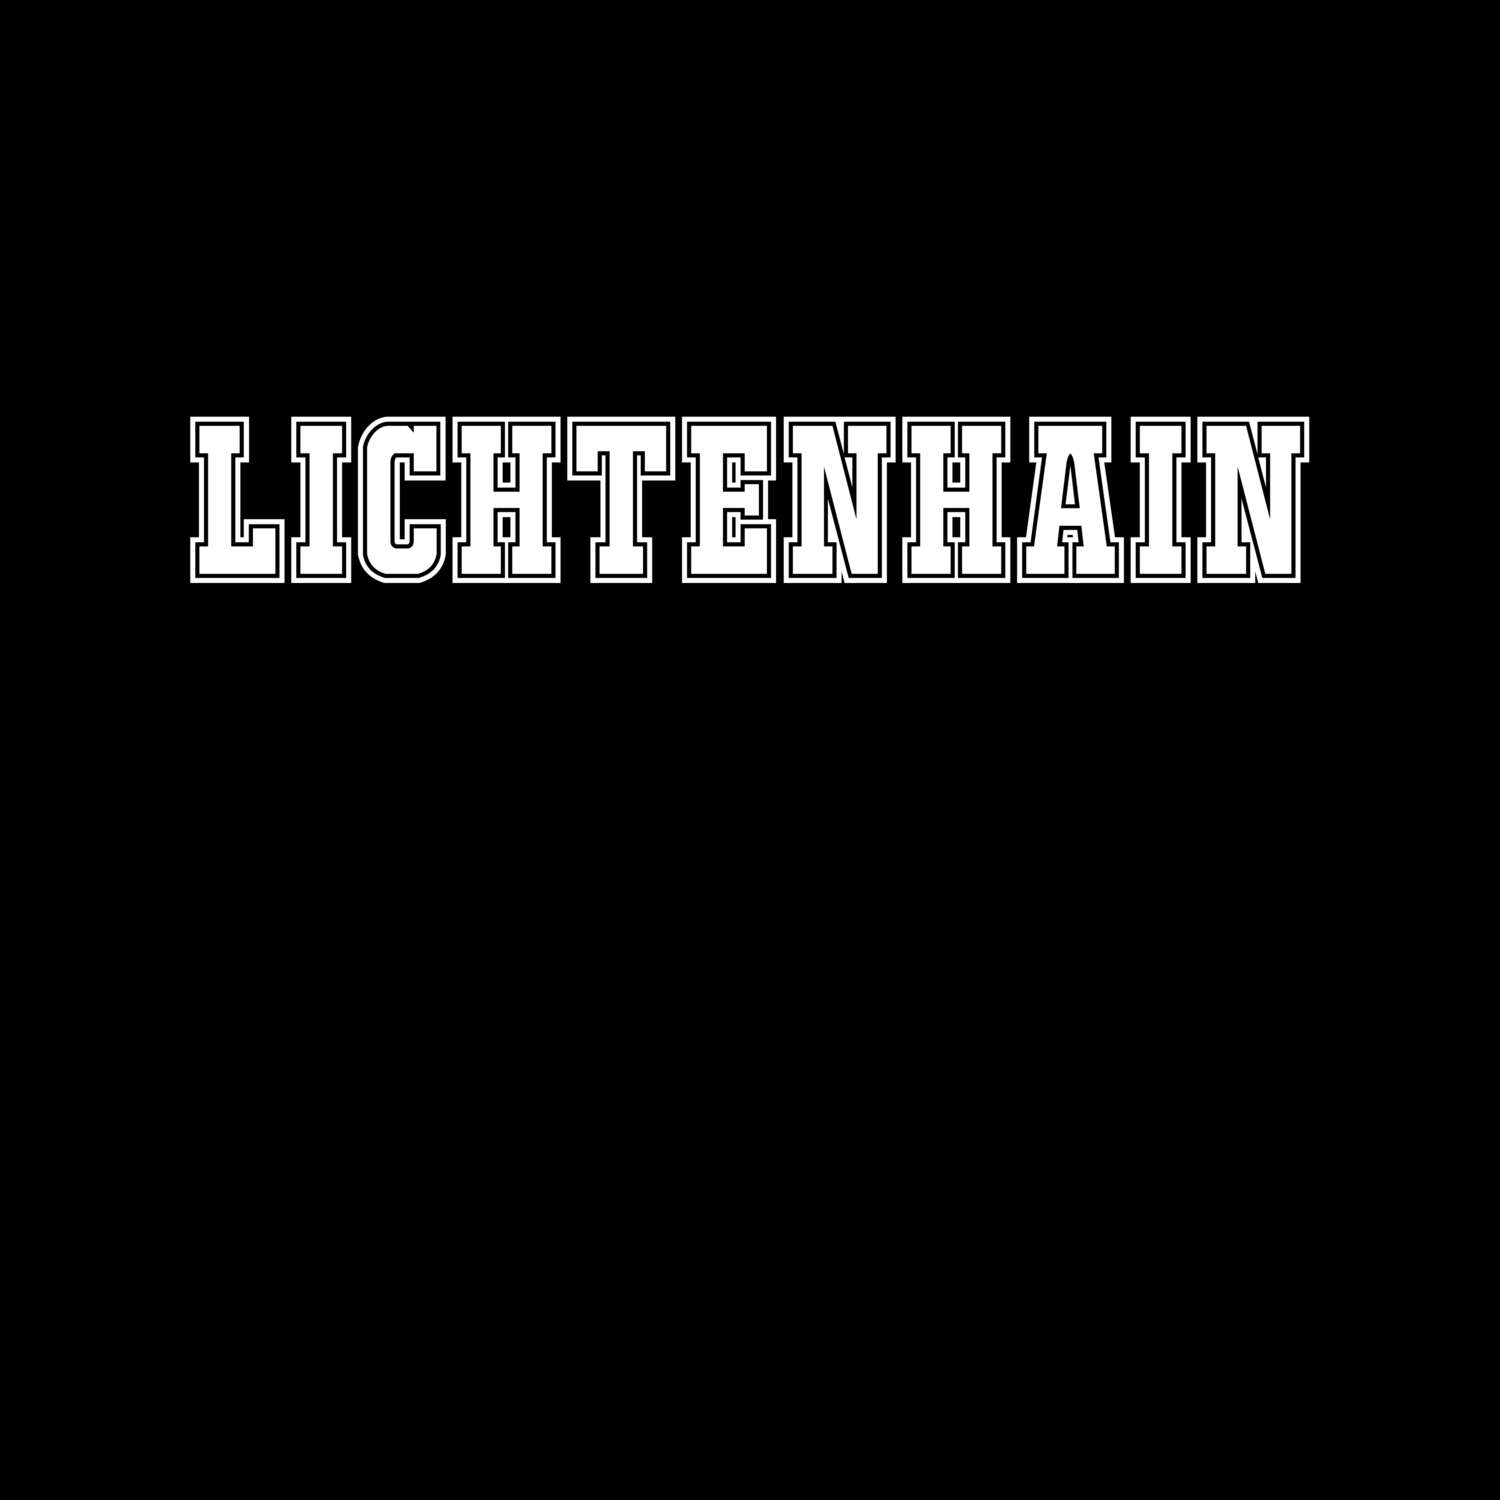 Lichtenhain T-Shirt »Classic«